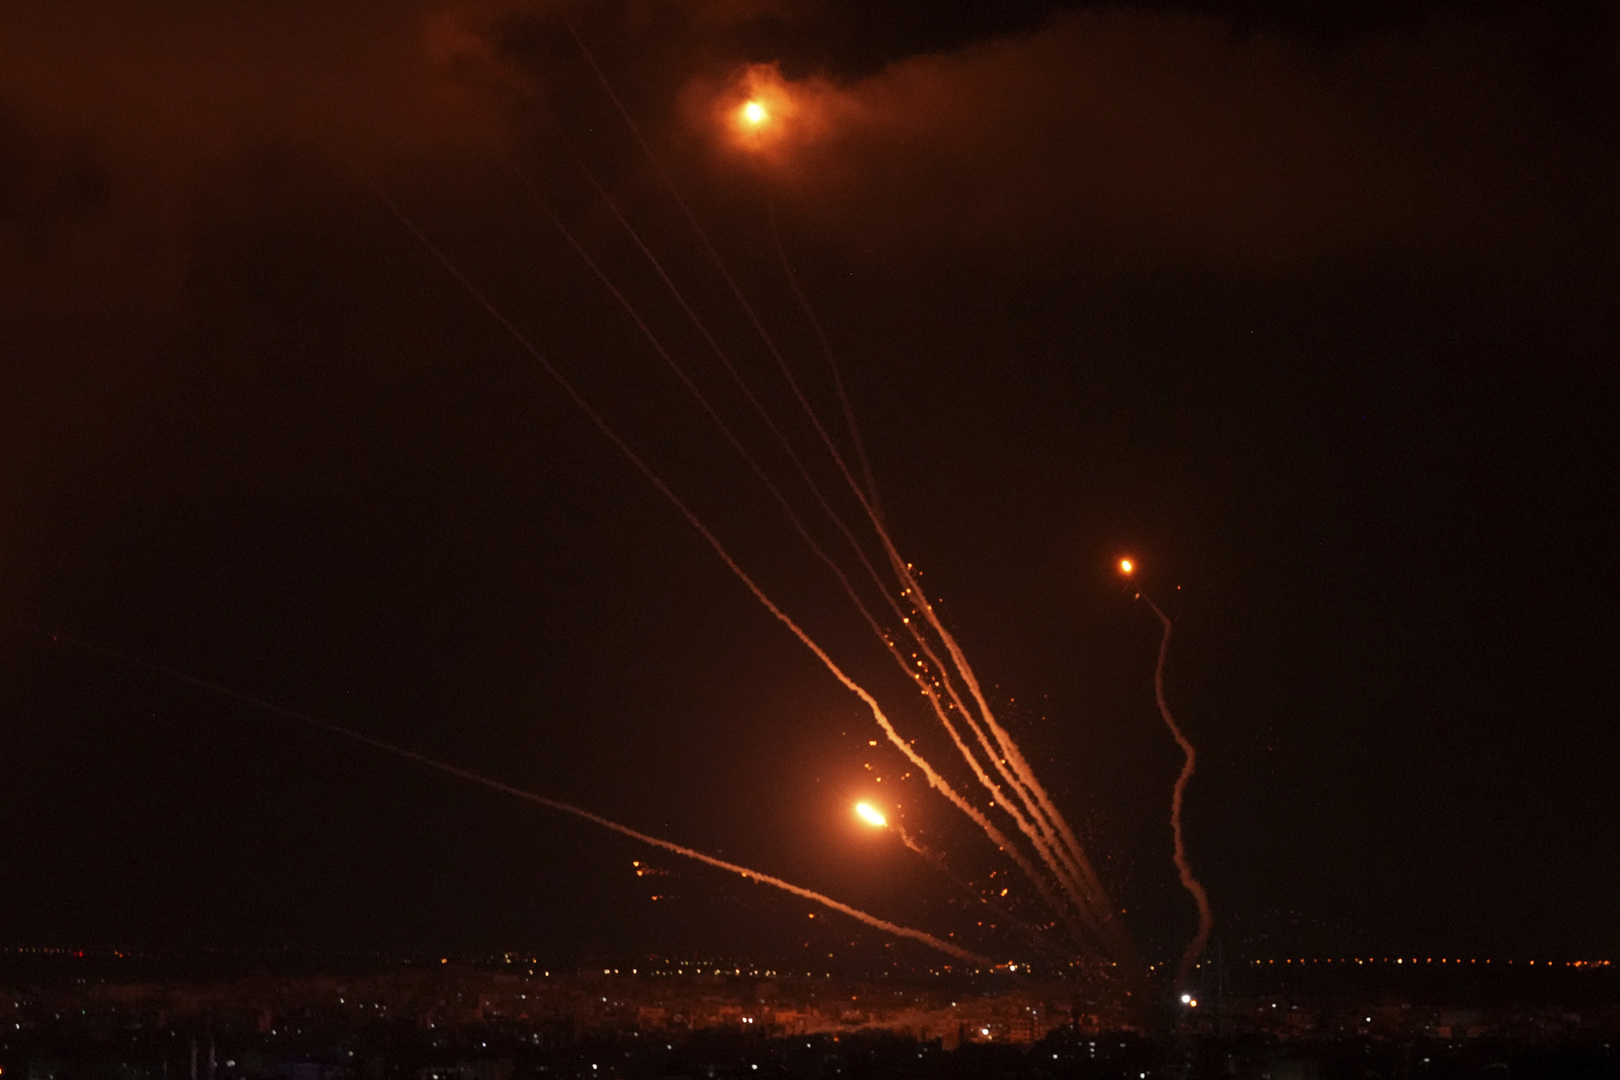 سرايا القدس: قصفنا مطار بن غوريون و تل أبيب وأسدود وبئر السبع وعسقلان ونتيفوت وسديروت بـ60 صاروخا